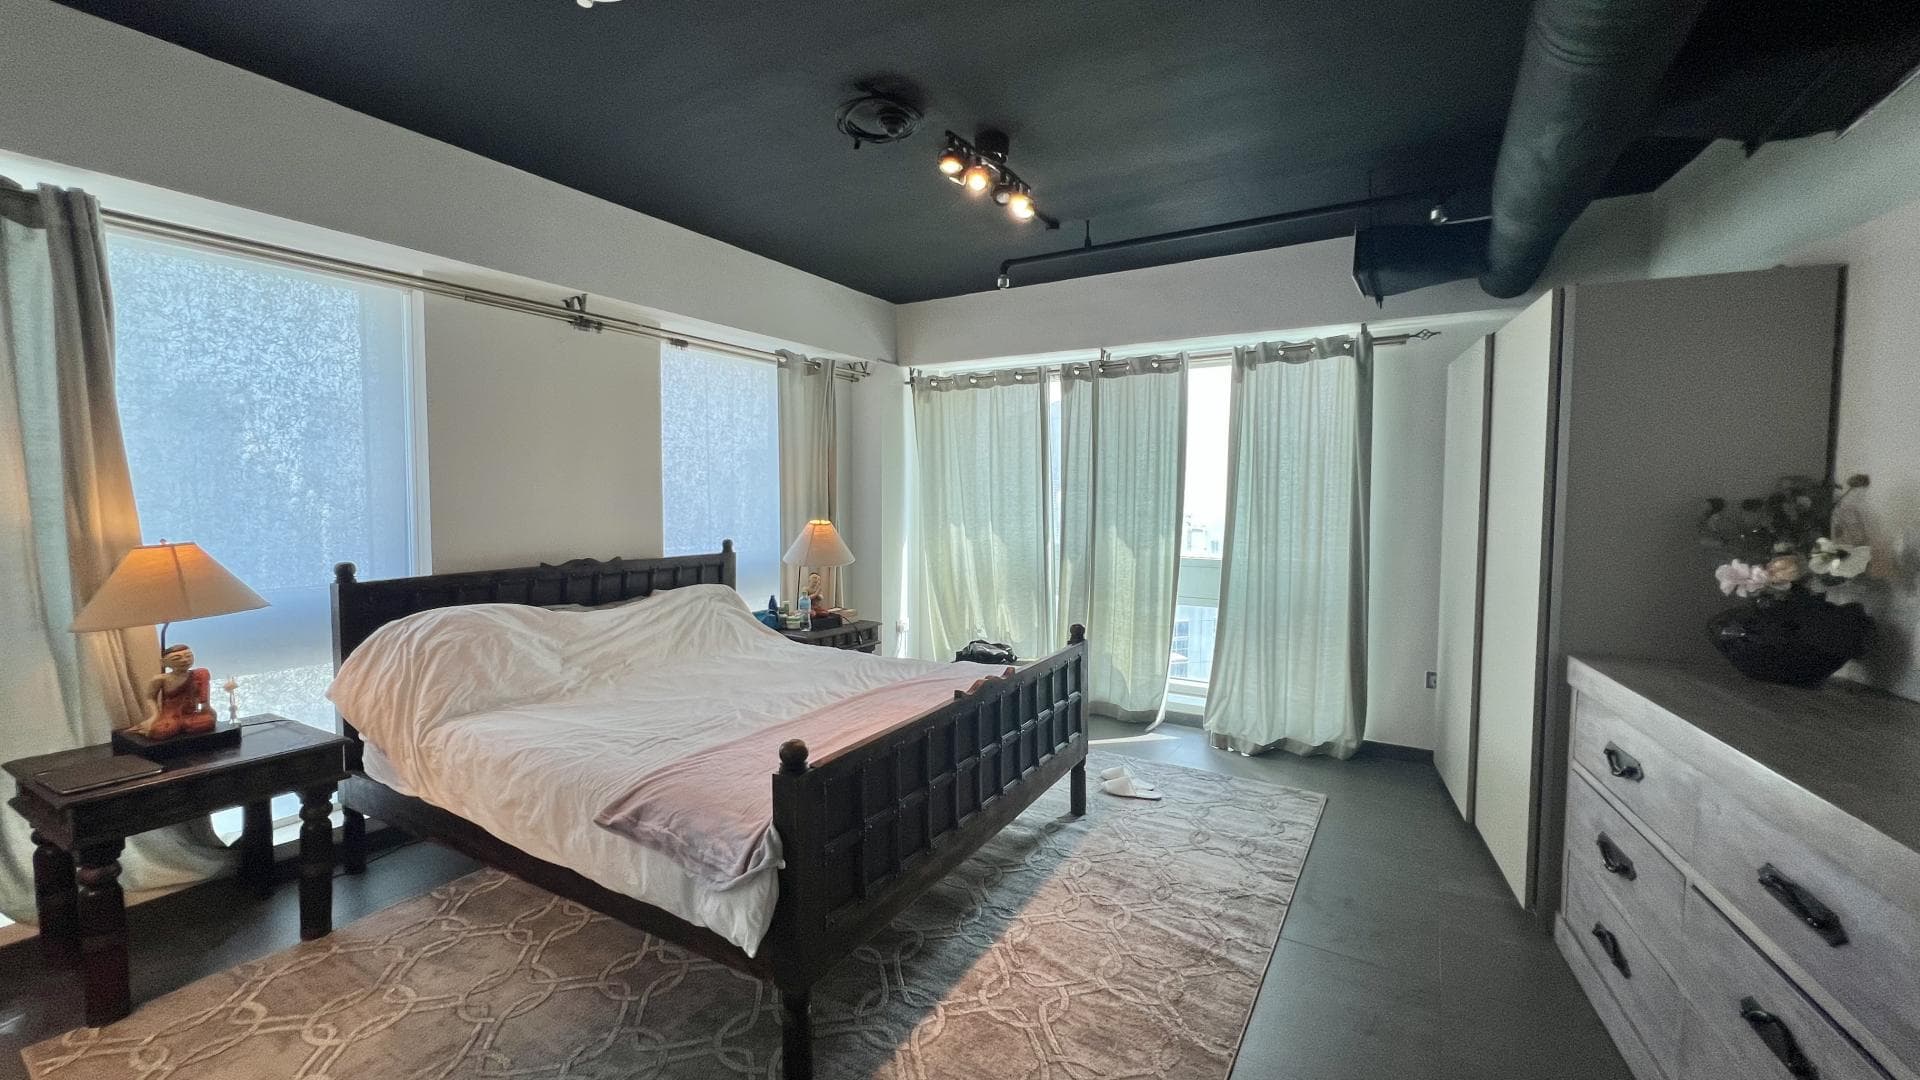 2 Bedroom Apartment For Rent  Lp38495 2db2f7b9df51d000.jpg